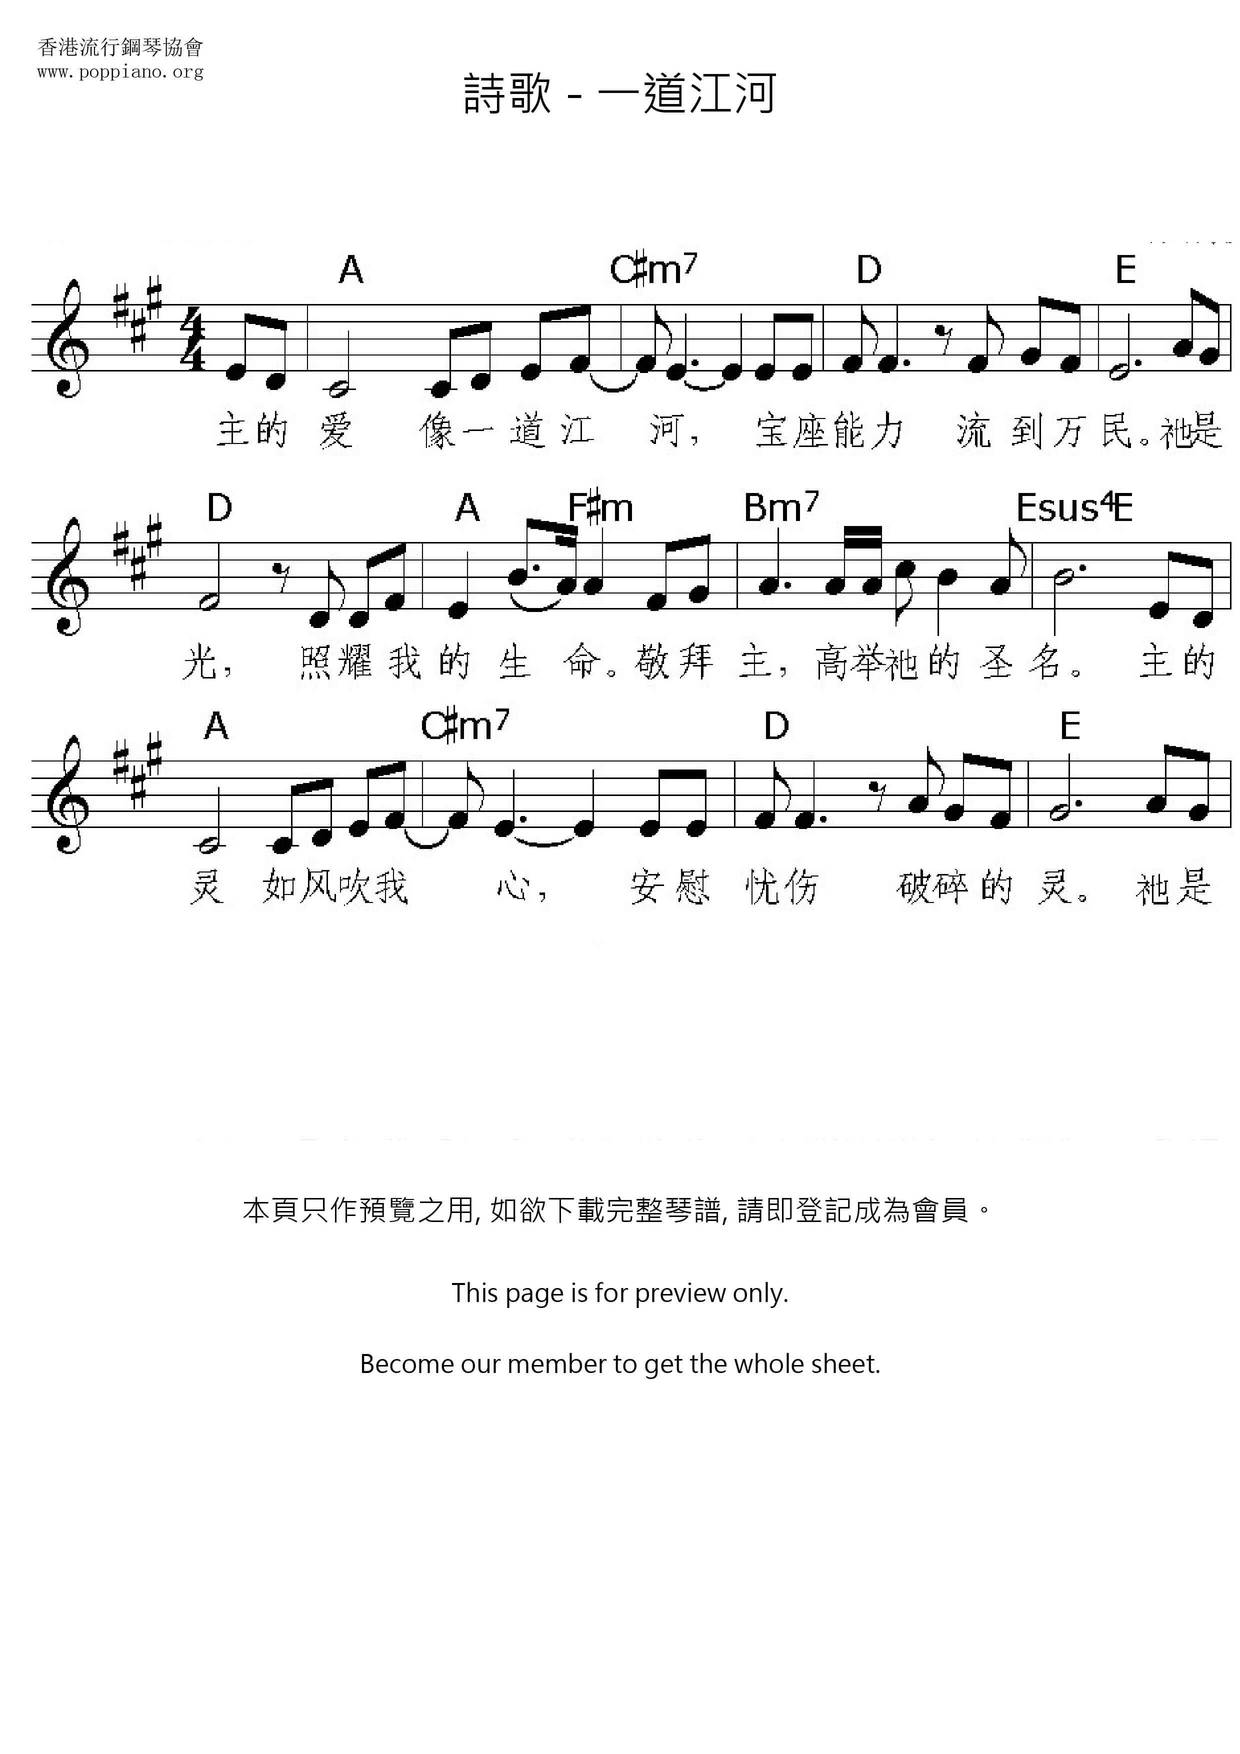 Yidaojianghe Score